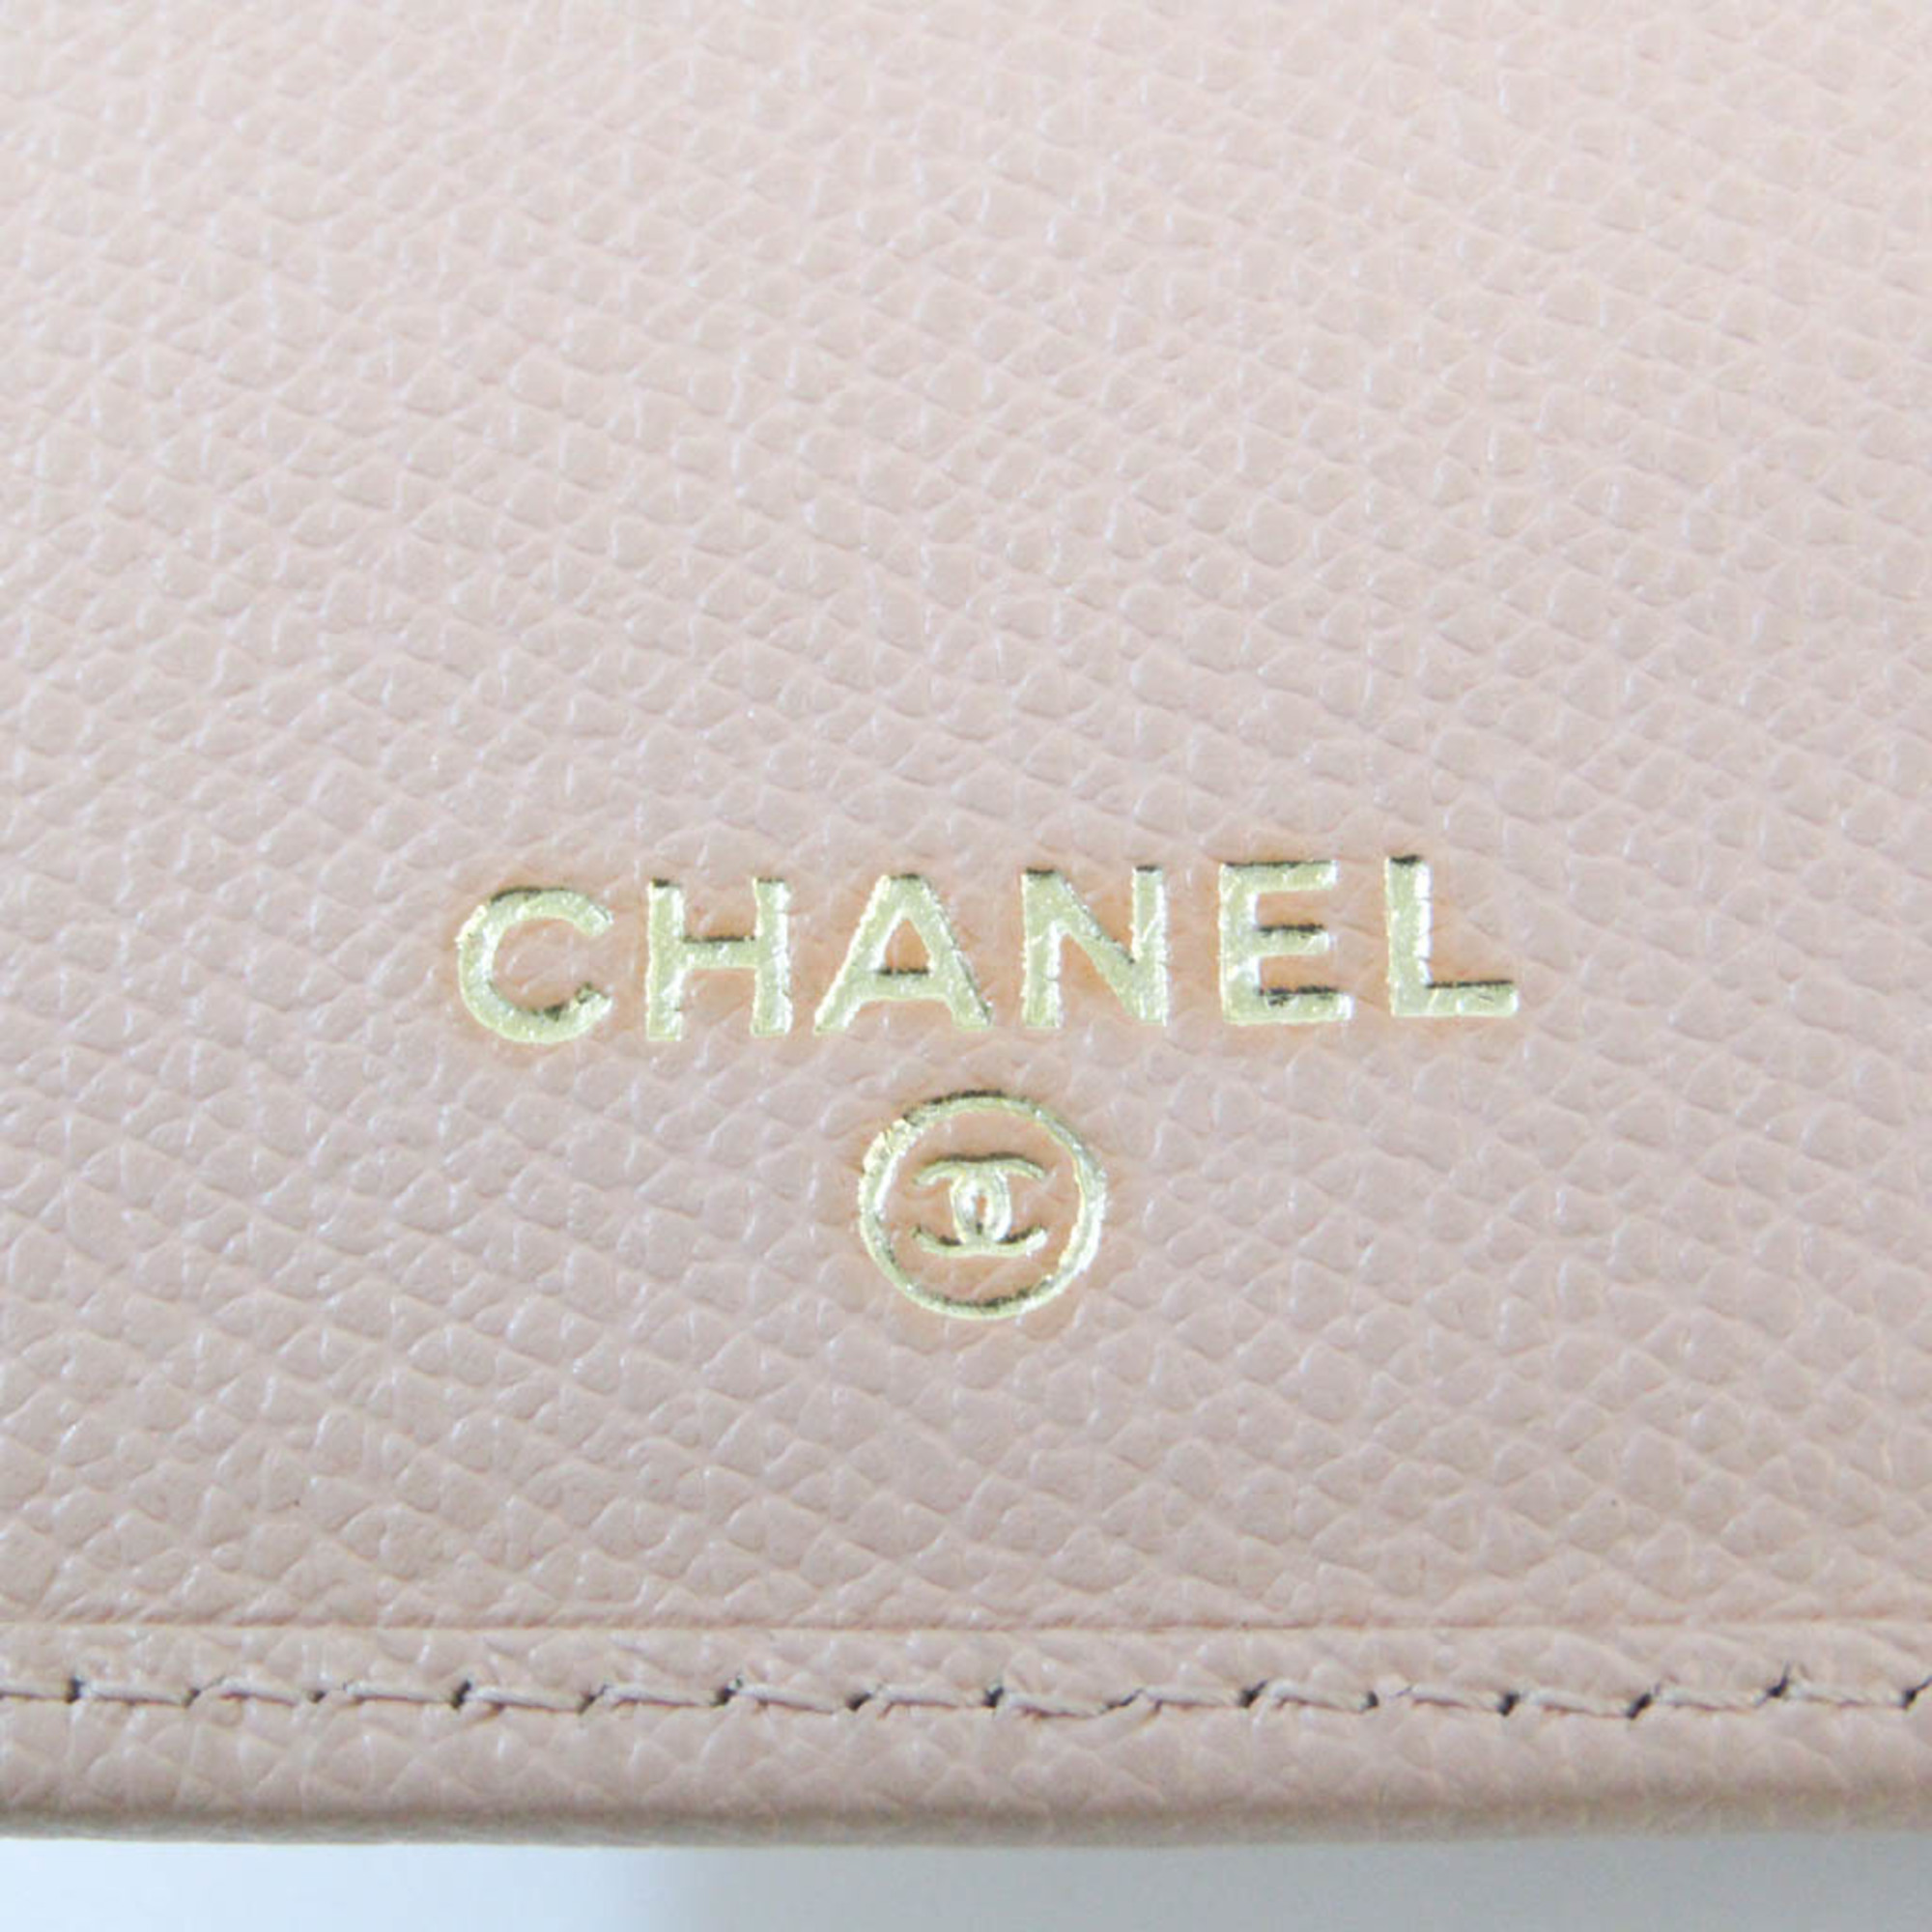 Chanel Coco Button Women's Leather Long Wallet (bi-fold) Light Beige